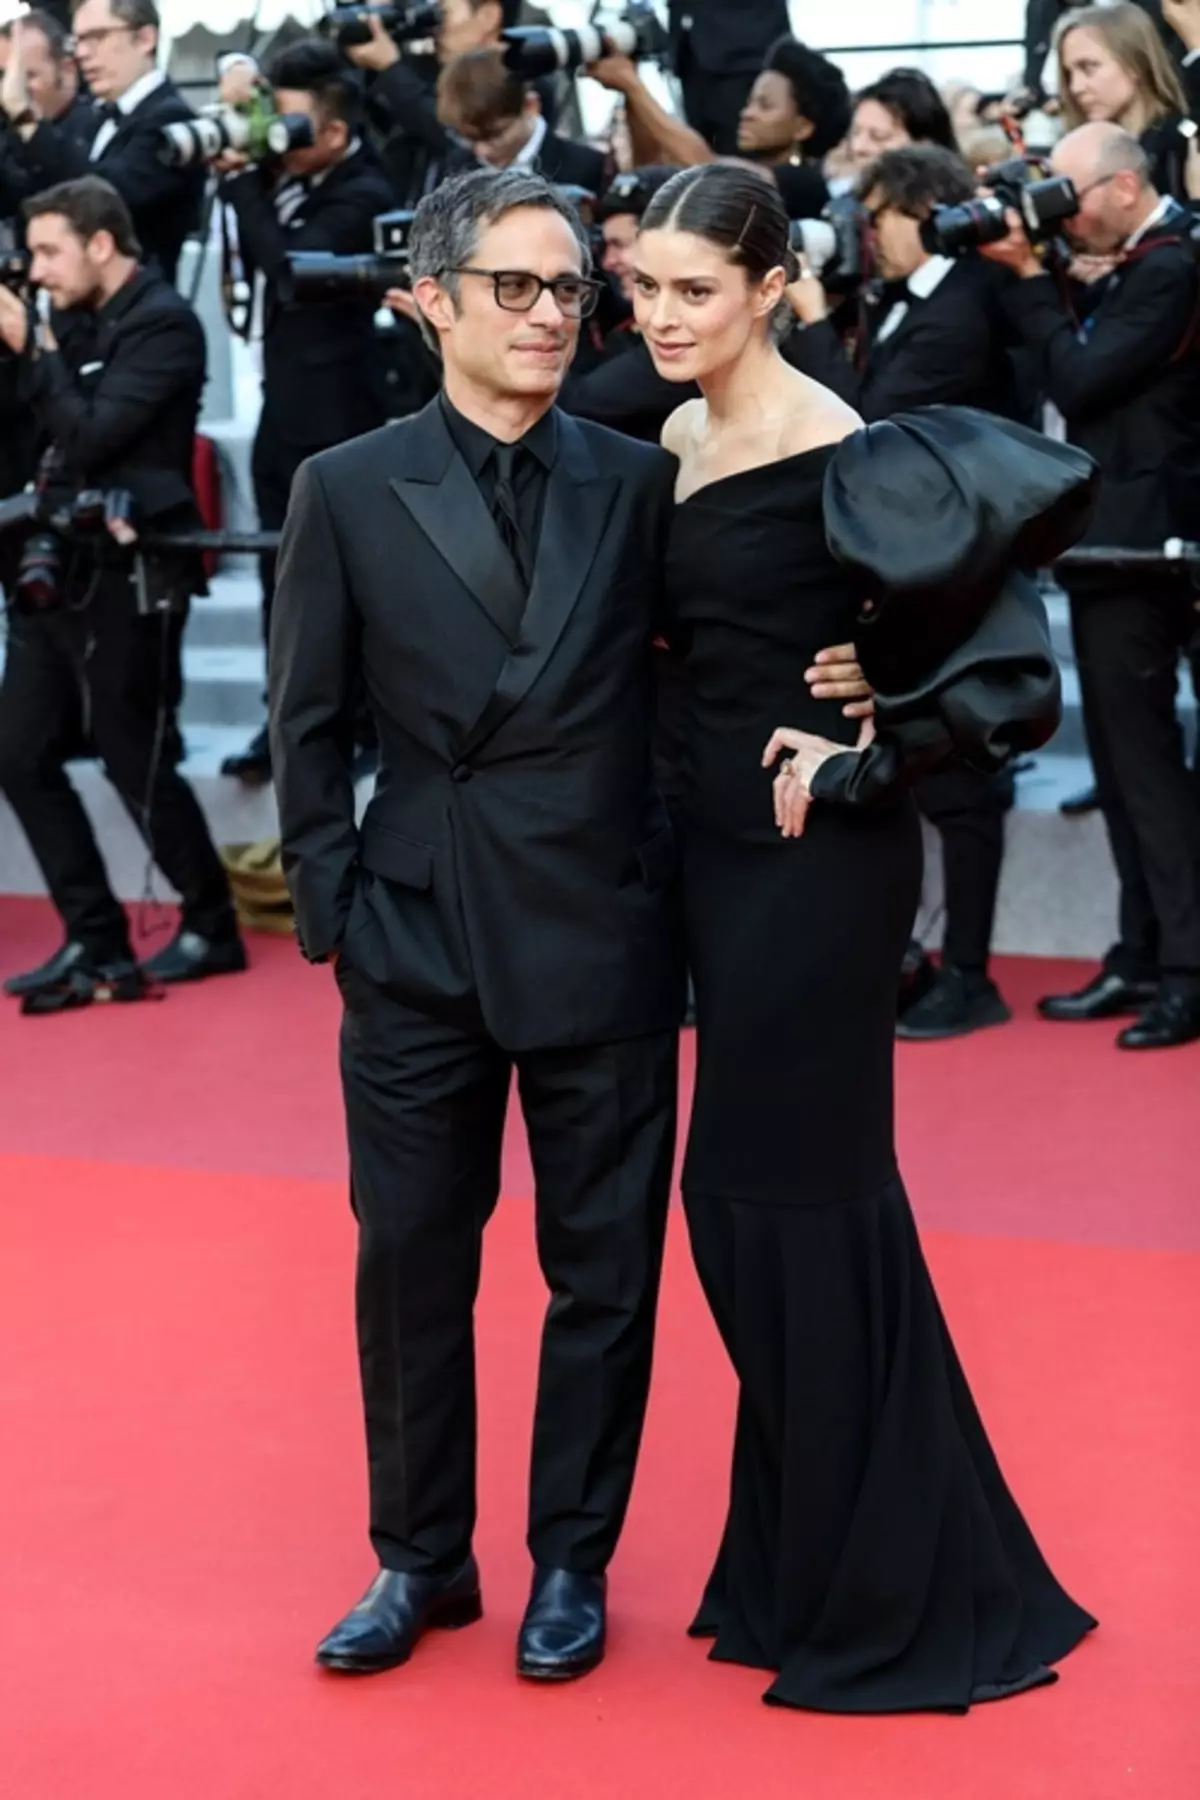 FOTO: Viggo Mortensen, Vensean Kassel, Catherine Denev i druge zvijezde na svečanosti zatvaranja Cannes Festivala 2019 41459_11